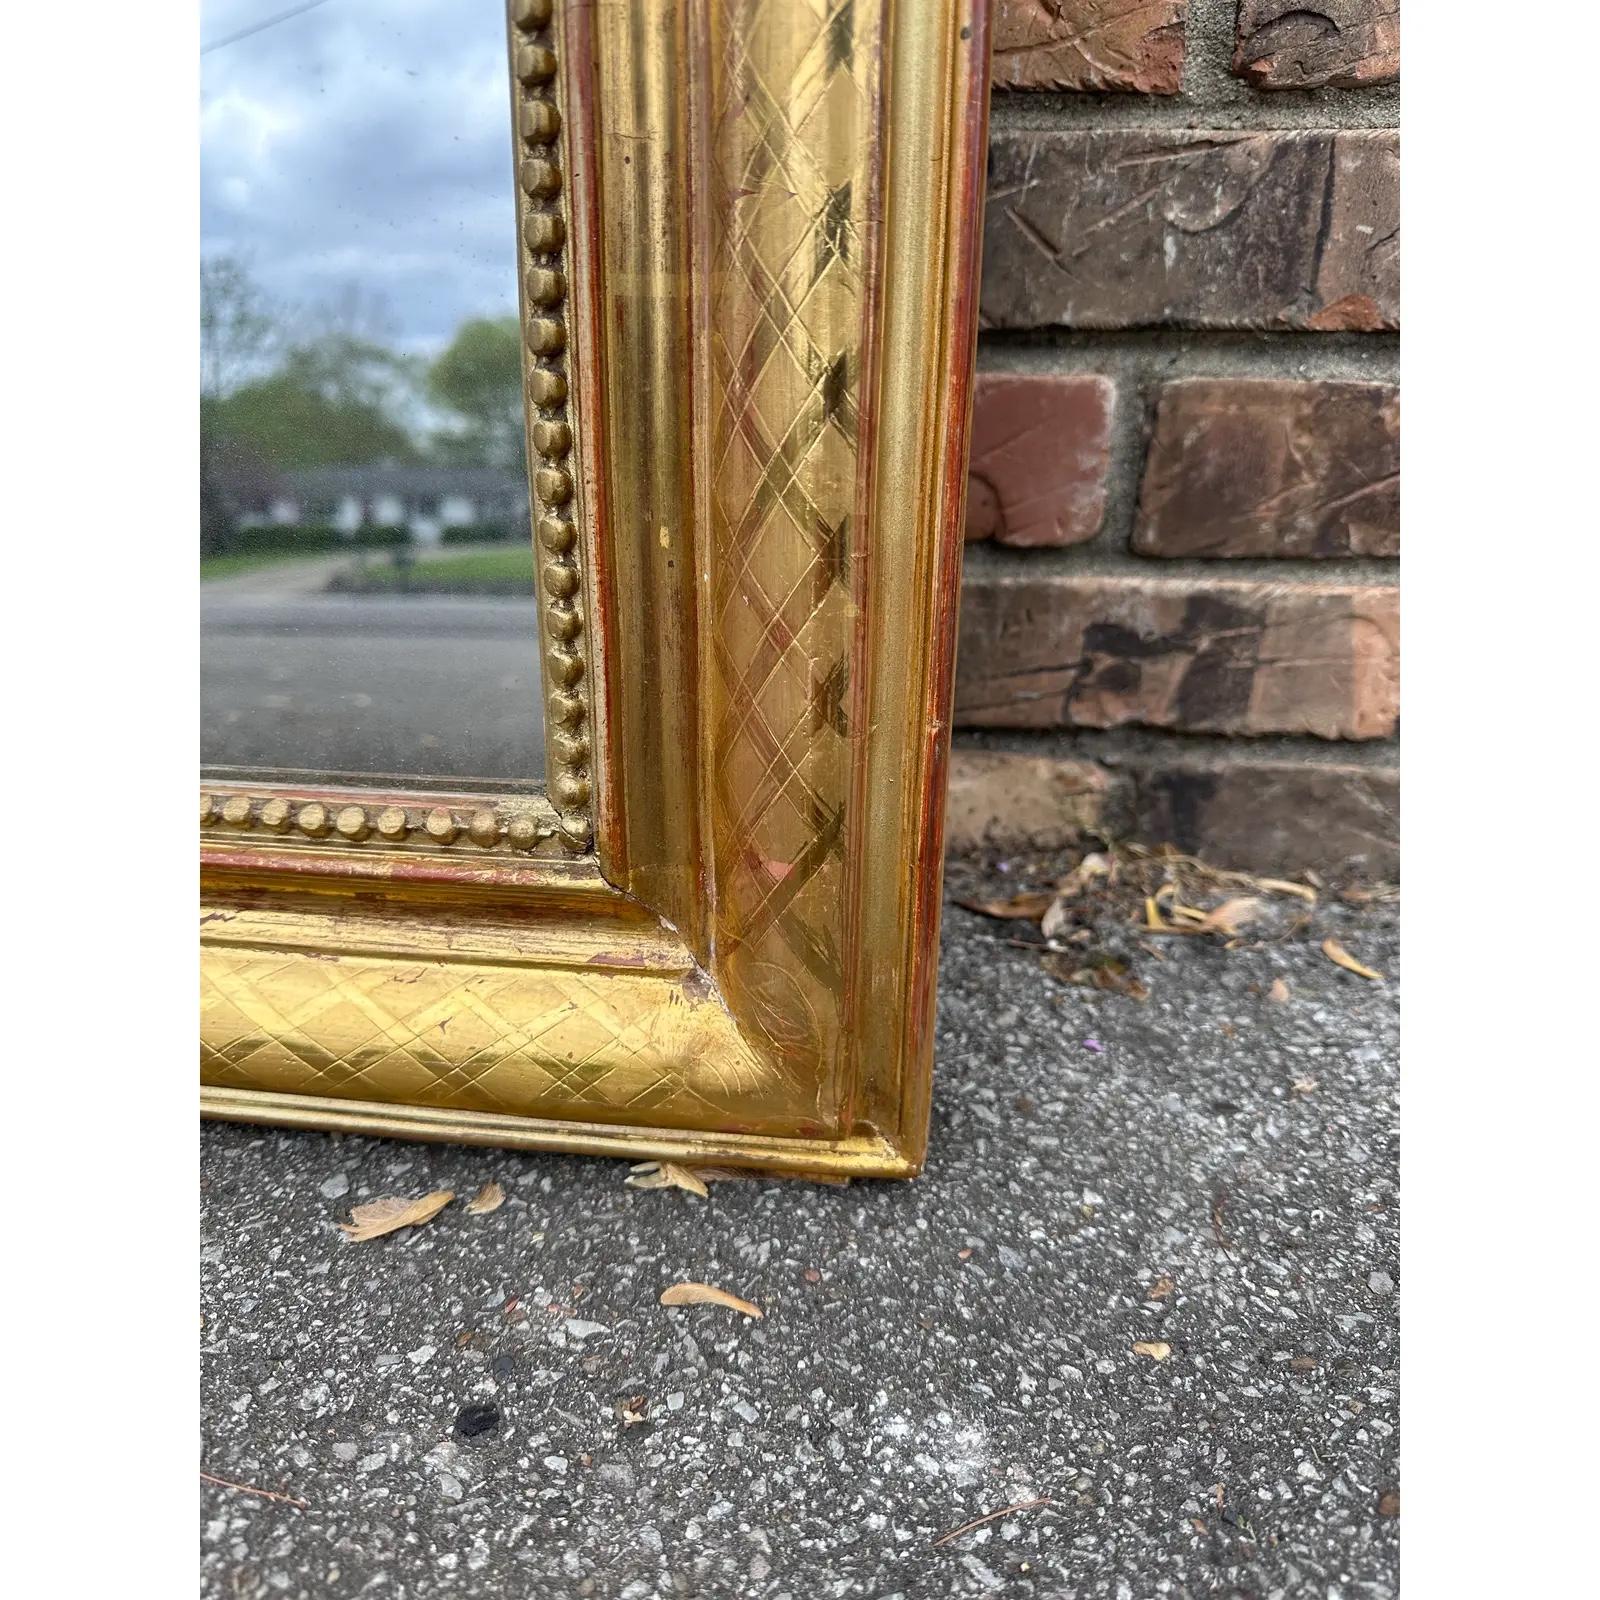 Cet exquis miroir Louis Philippe antique, orné d'une finition dorée, apporte sans effort un charme intemporel à n'importe quel espace. Ses détails ornés et son design classique en font une pièce maîtresse captivante, reflétant à la fois le style et